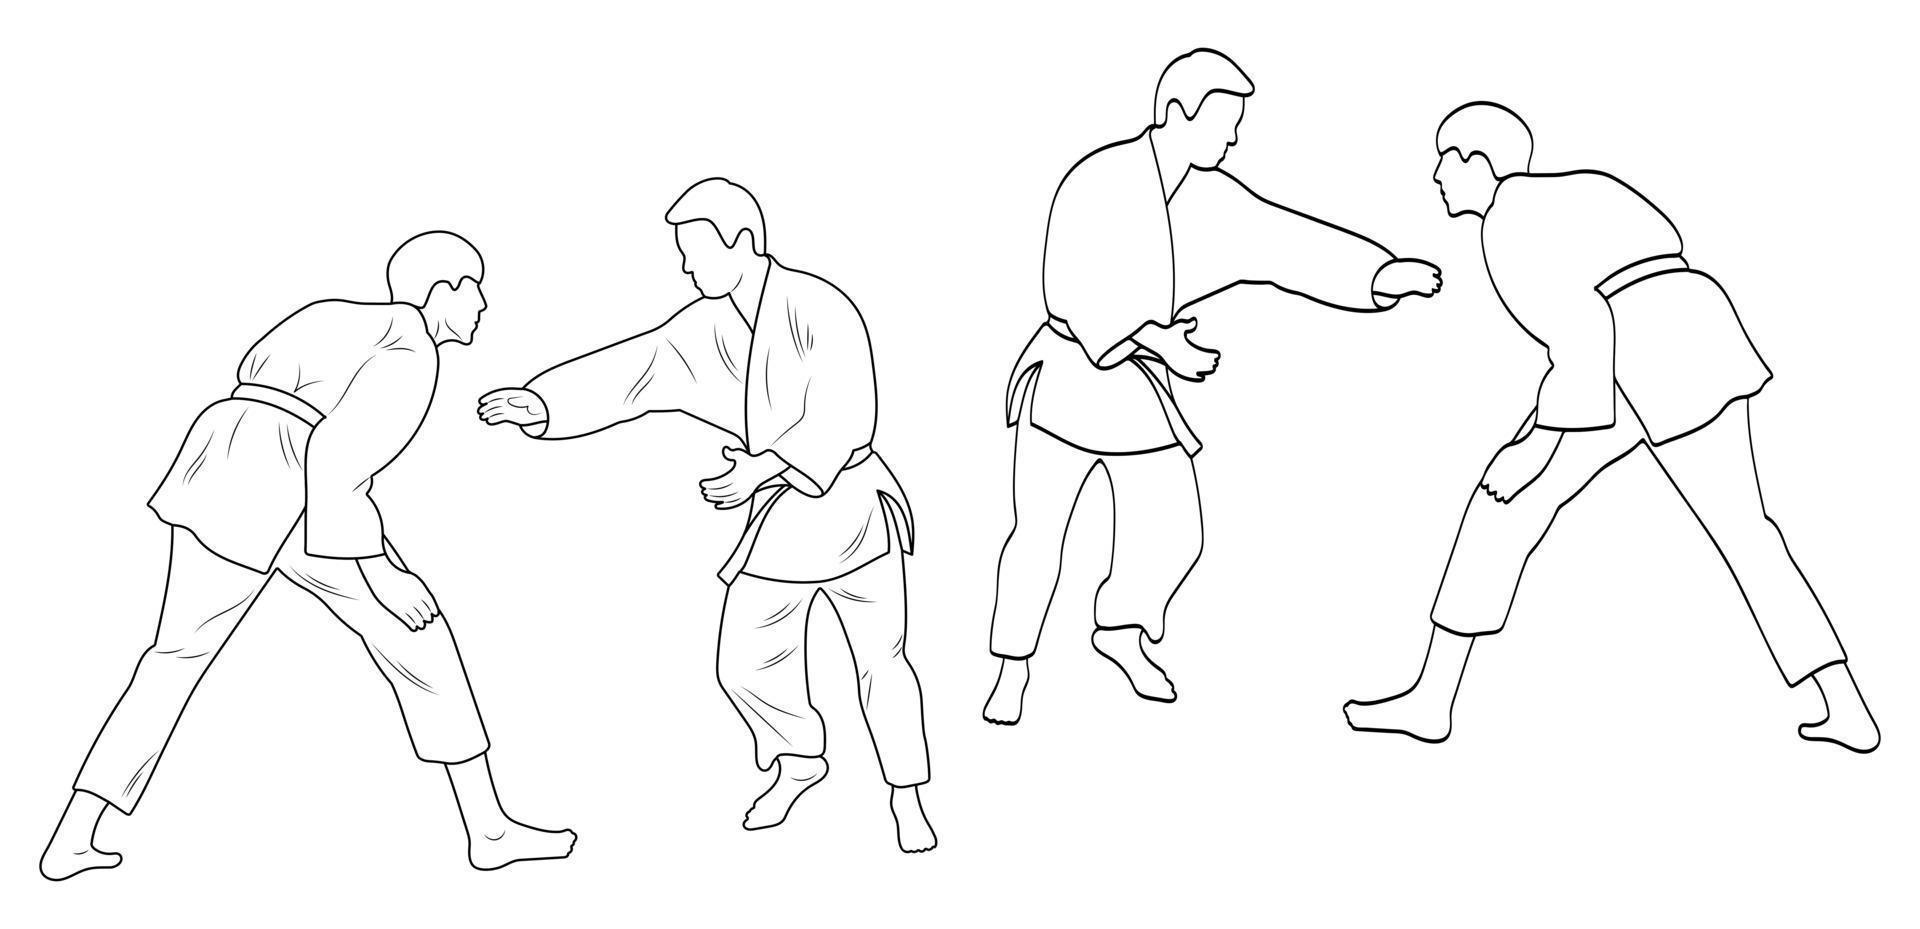 schetsen judoka, judoka atleet duel, gevecht, judo, pak van sport figuur silhouet schets vector